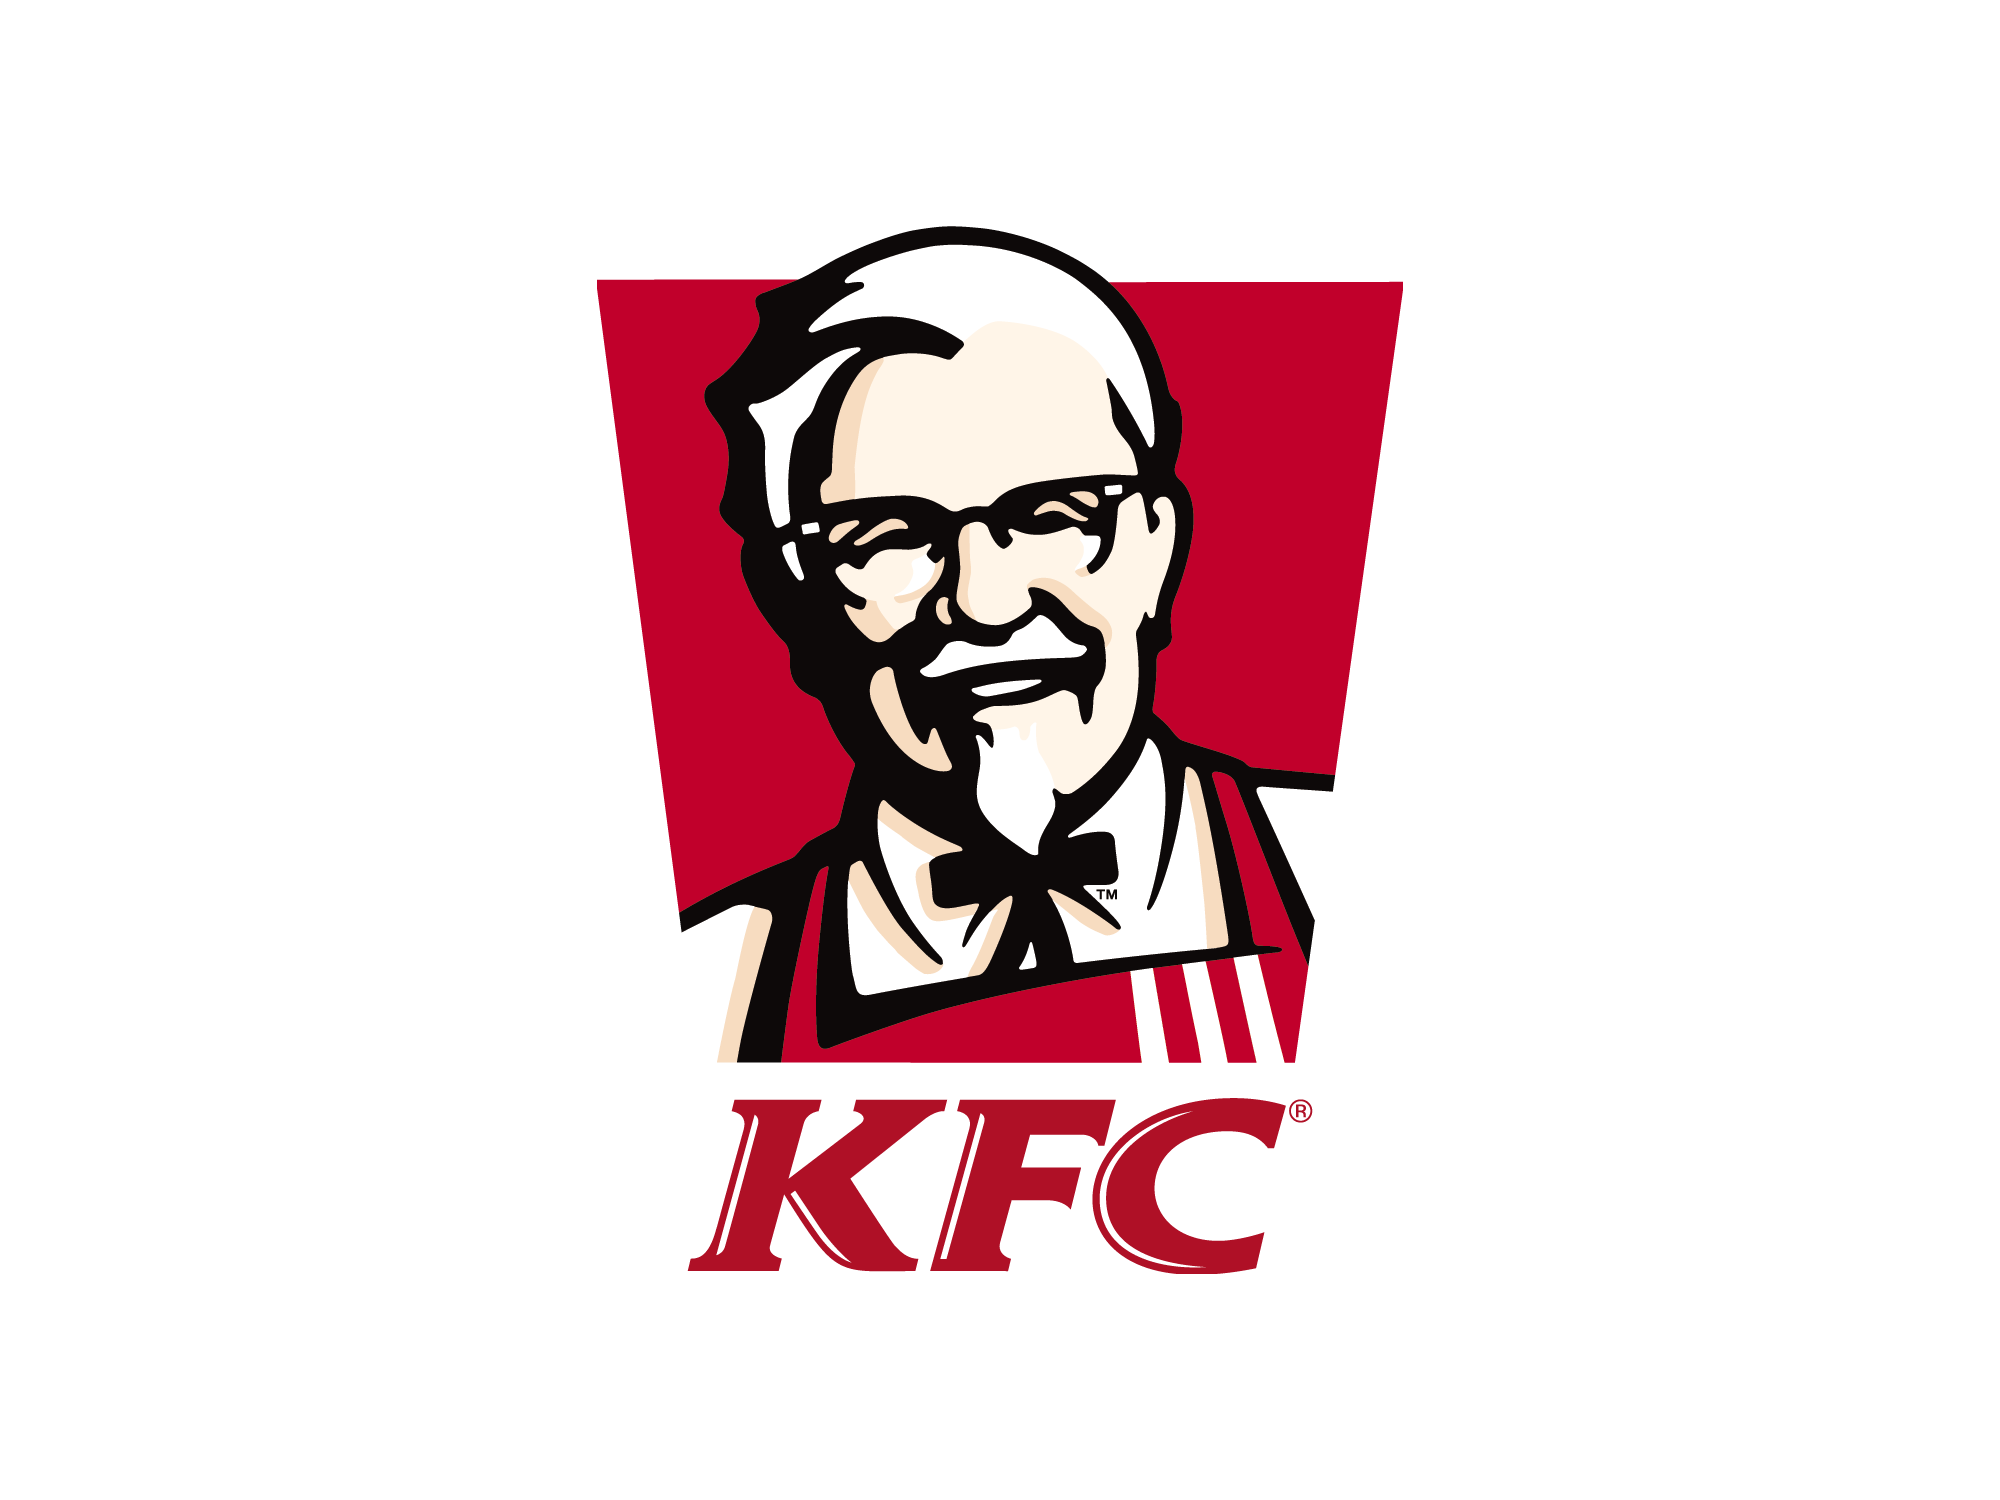 KFC Logo Transparent Images